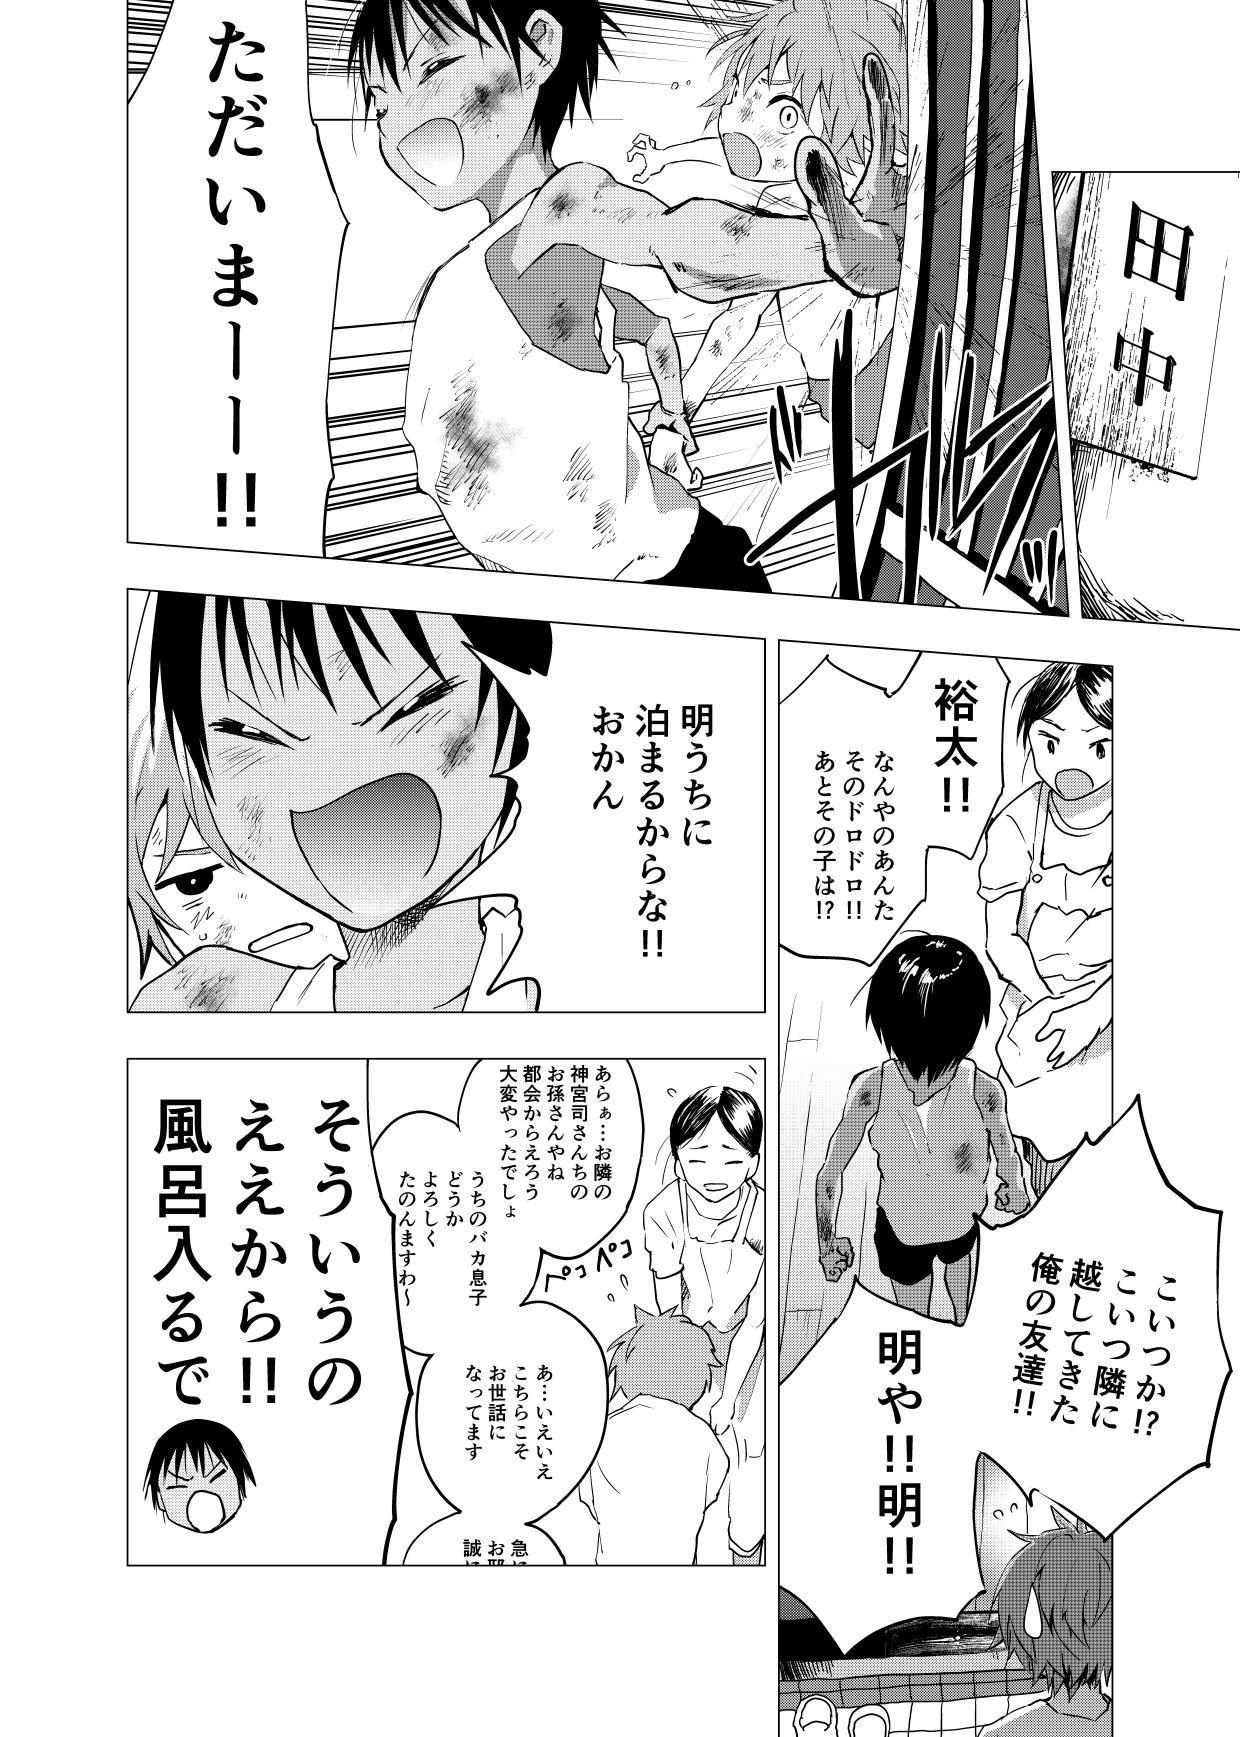 Inaka no Uke Shounen to Tokai no Seme Shounen no Ero Manga 1-4 46